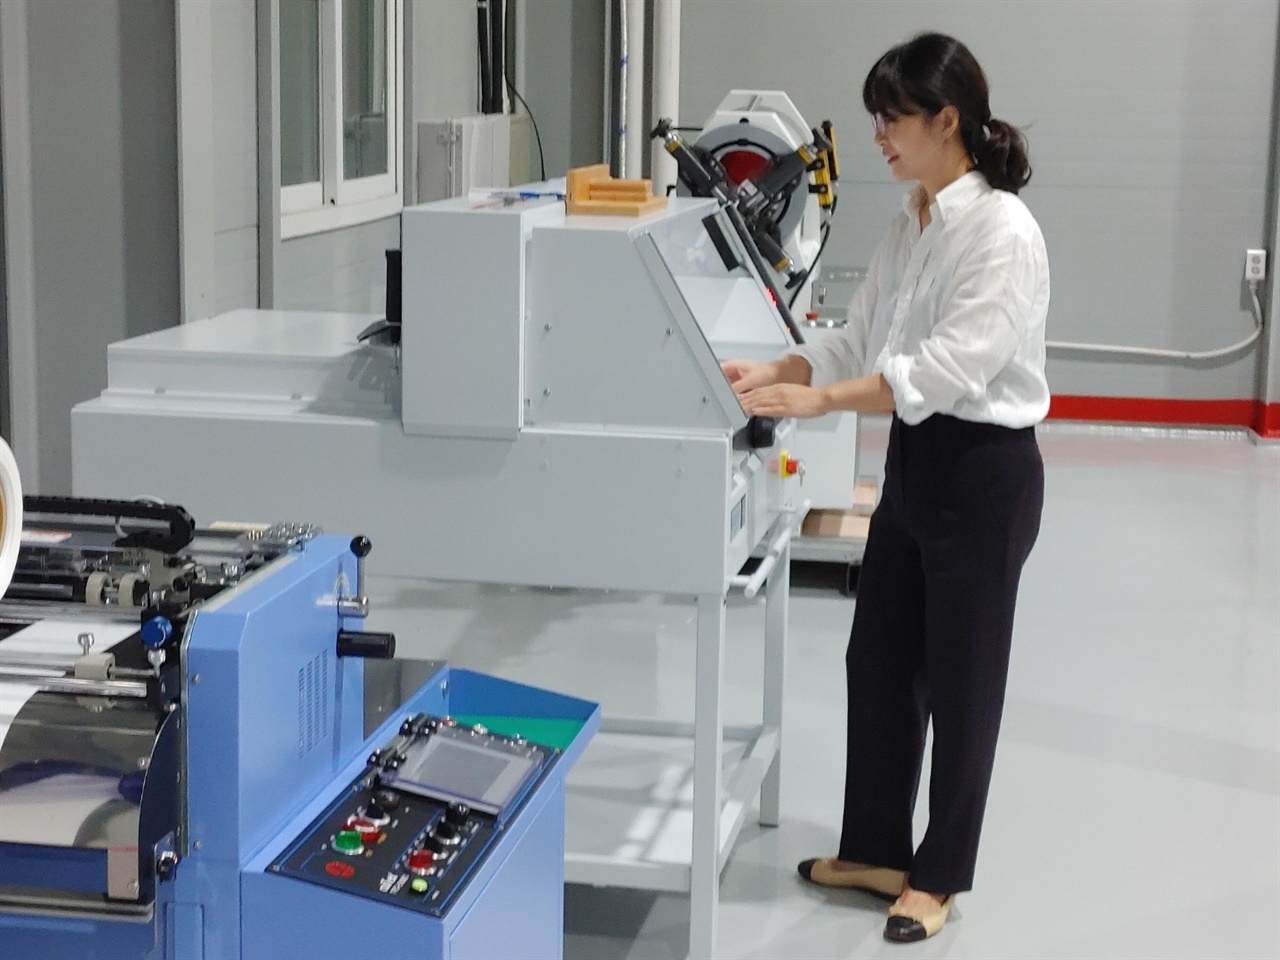 테이프리 대표 김선정씨가 하트테이프 라벨지인 속지를 생산하는 기계를 점검하고 있는 모습
